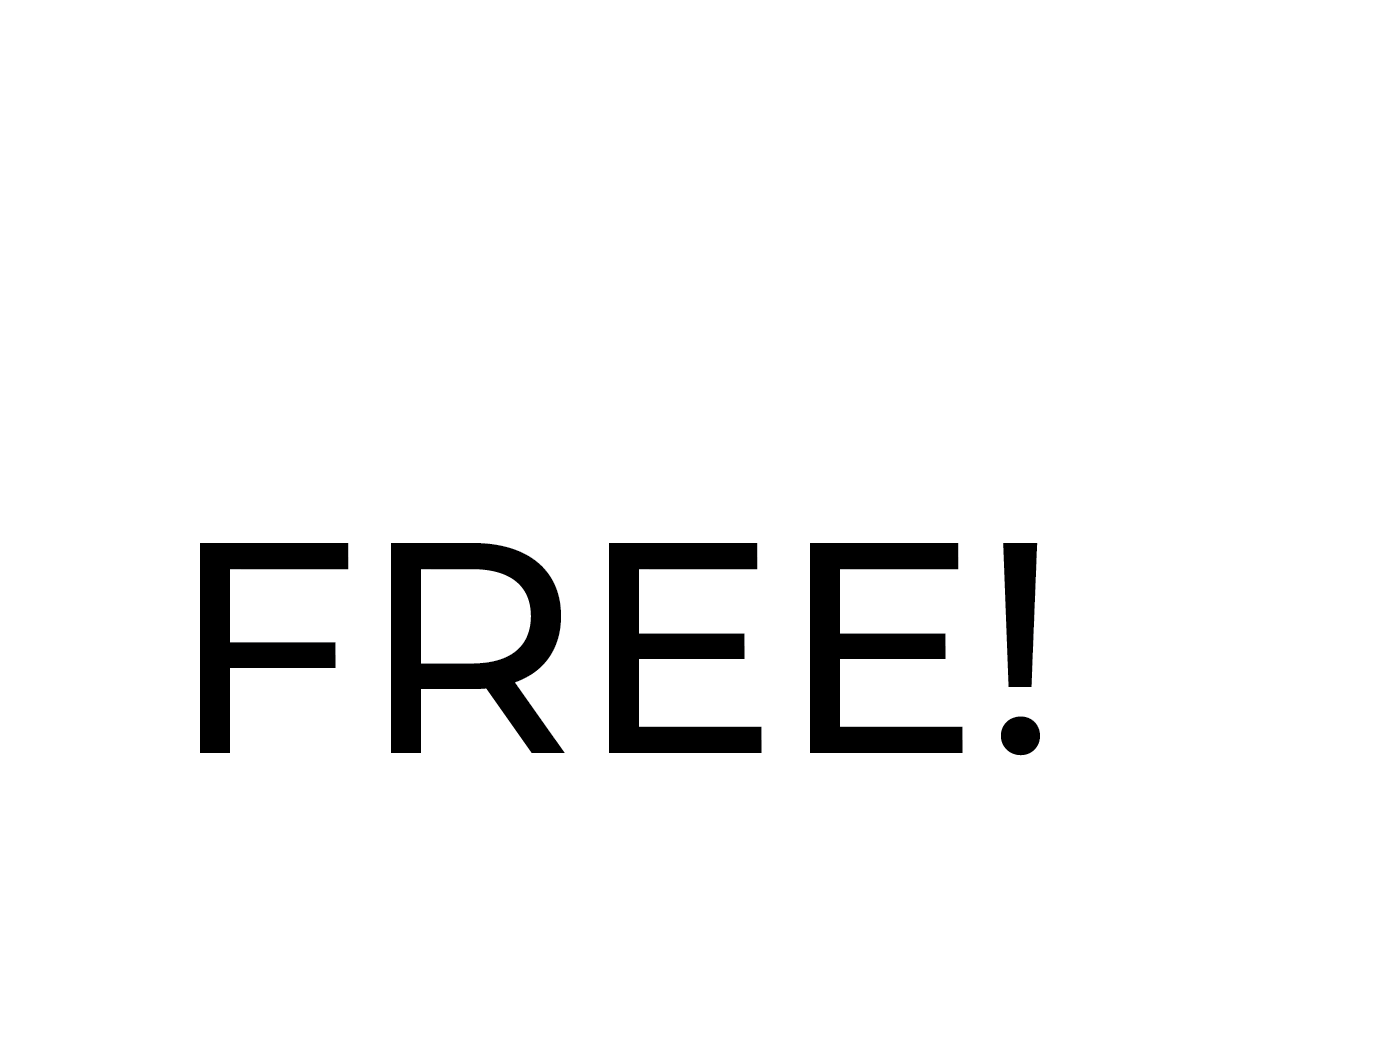 vat free icon